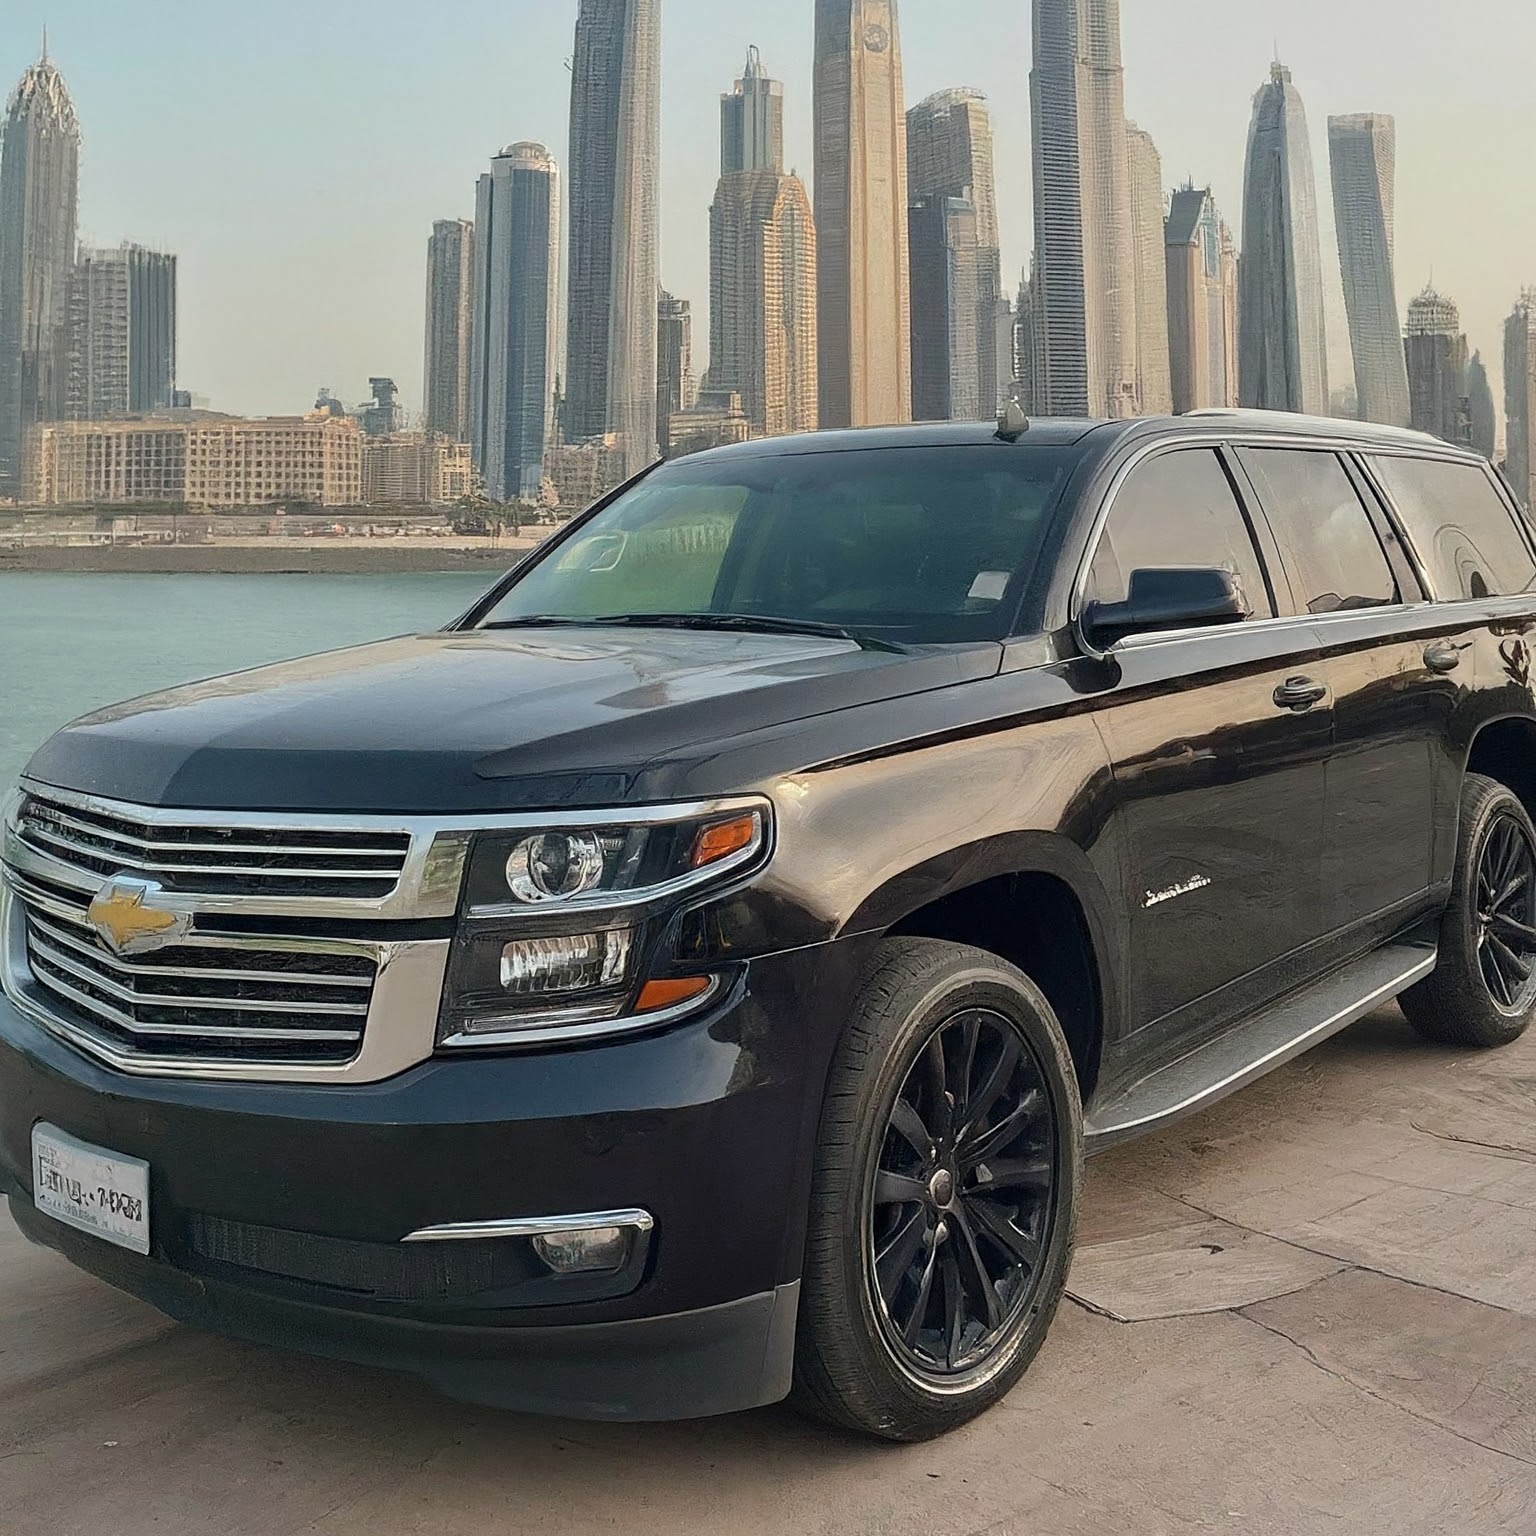 Chevy Tahoe Rental Car Dubai UAE